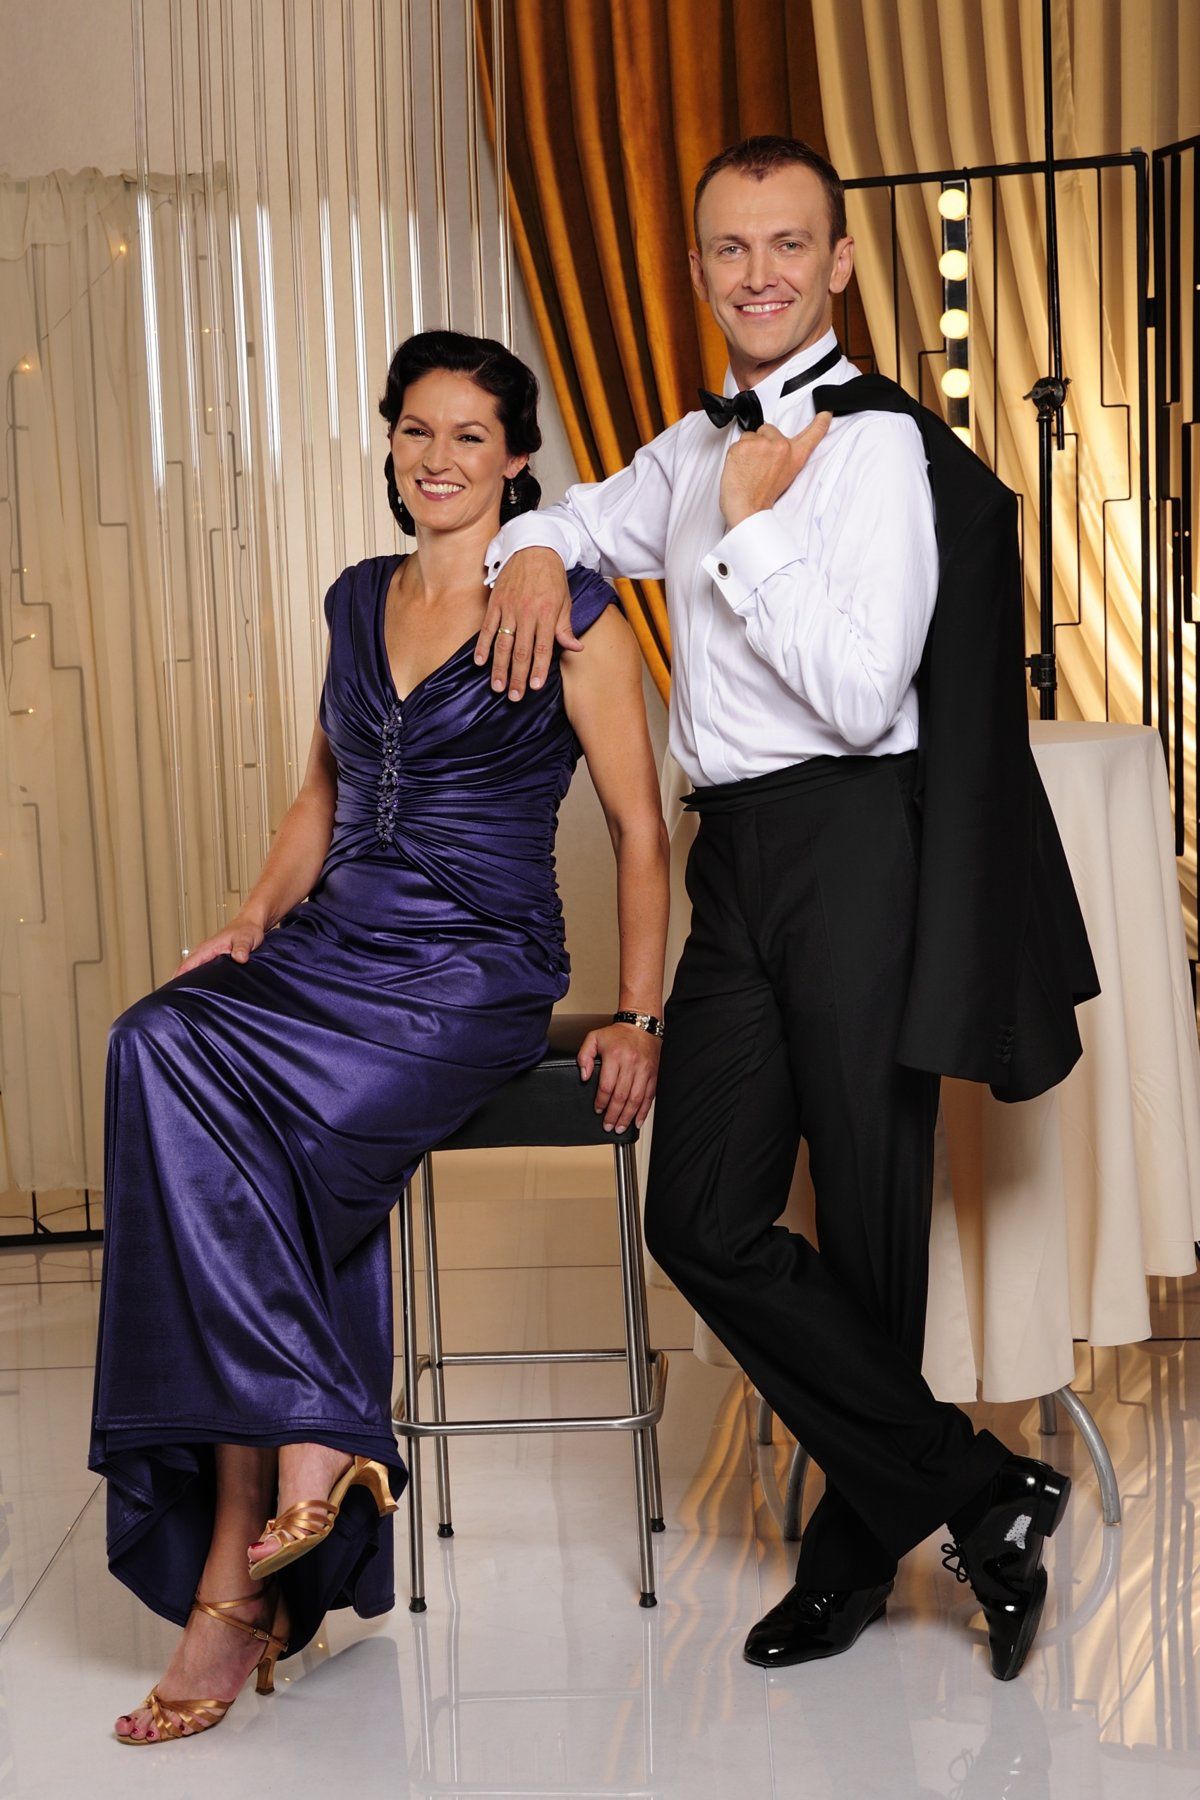 Šárka Kašpárková s Janem Tománkem tvoří krásný taneční pár.